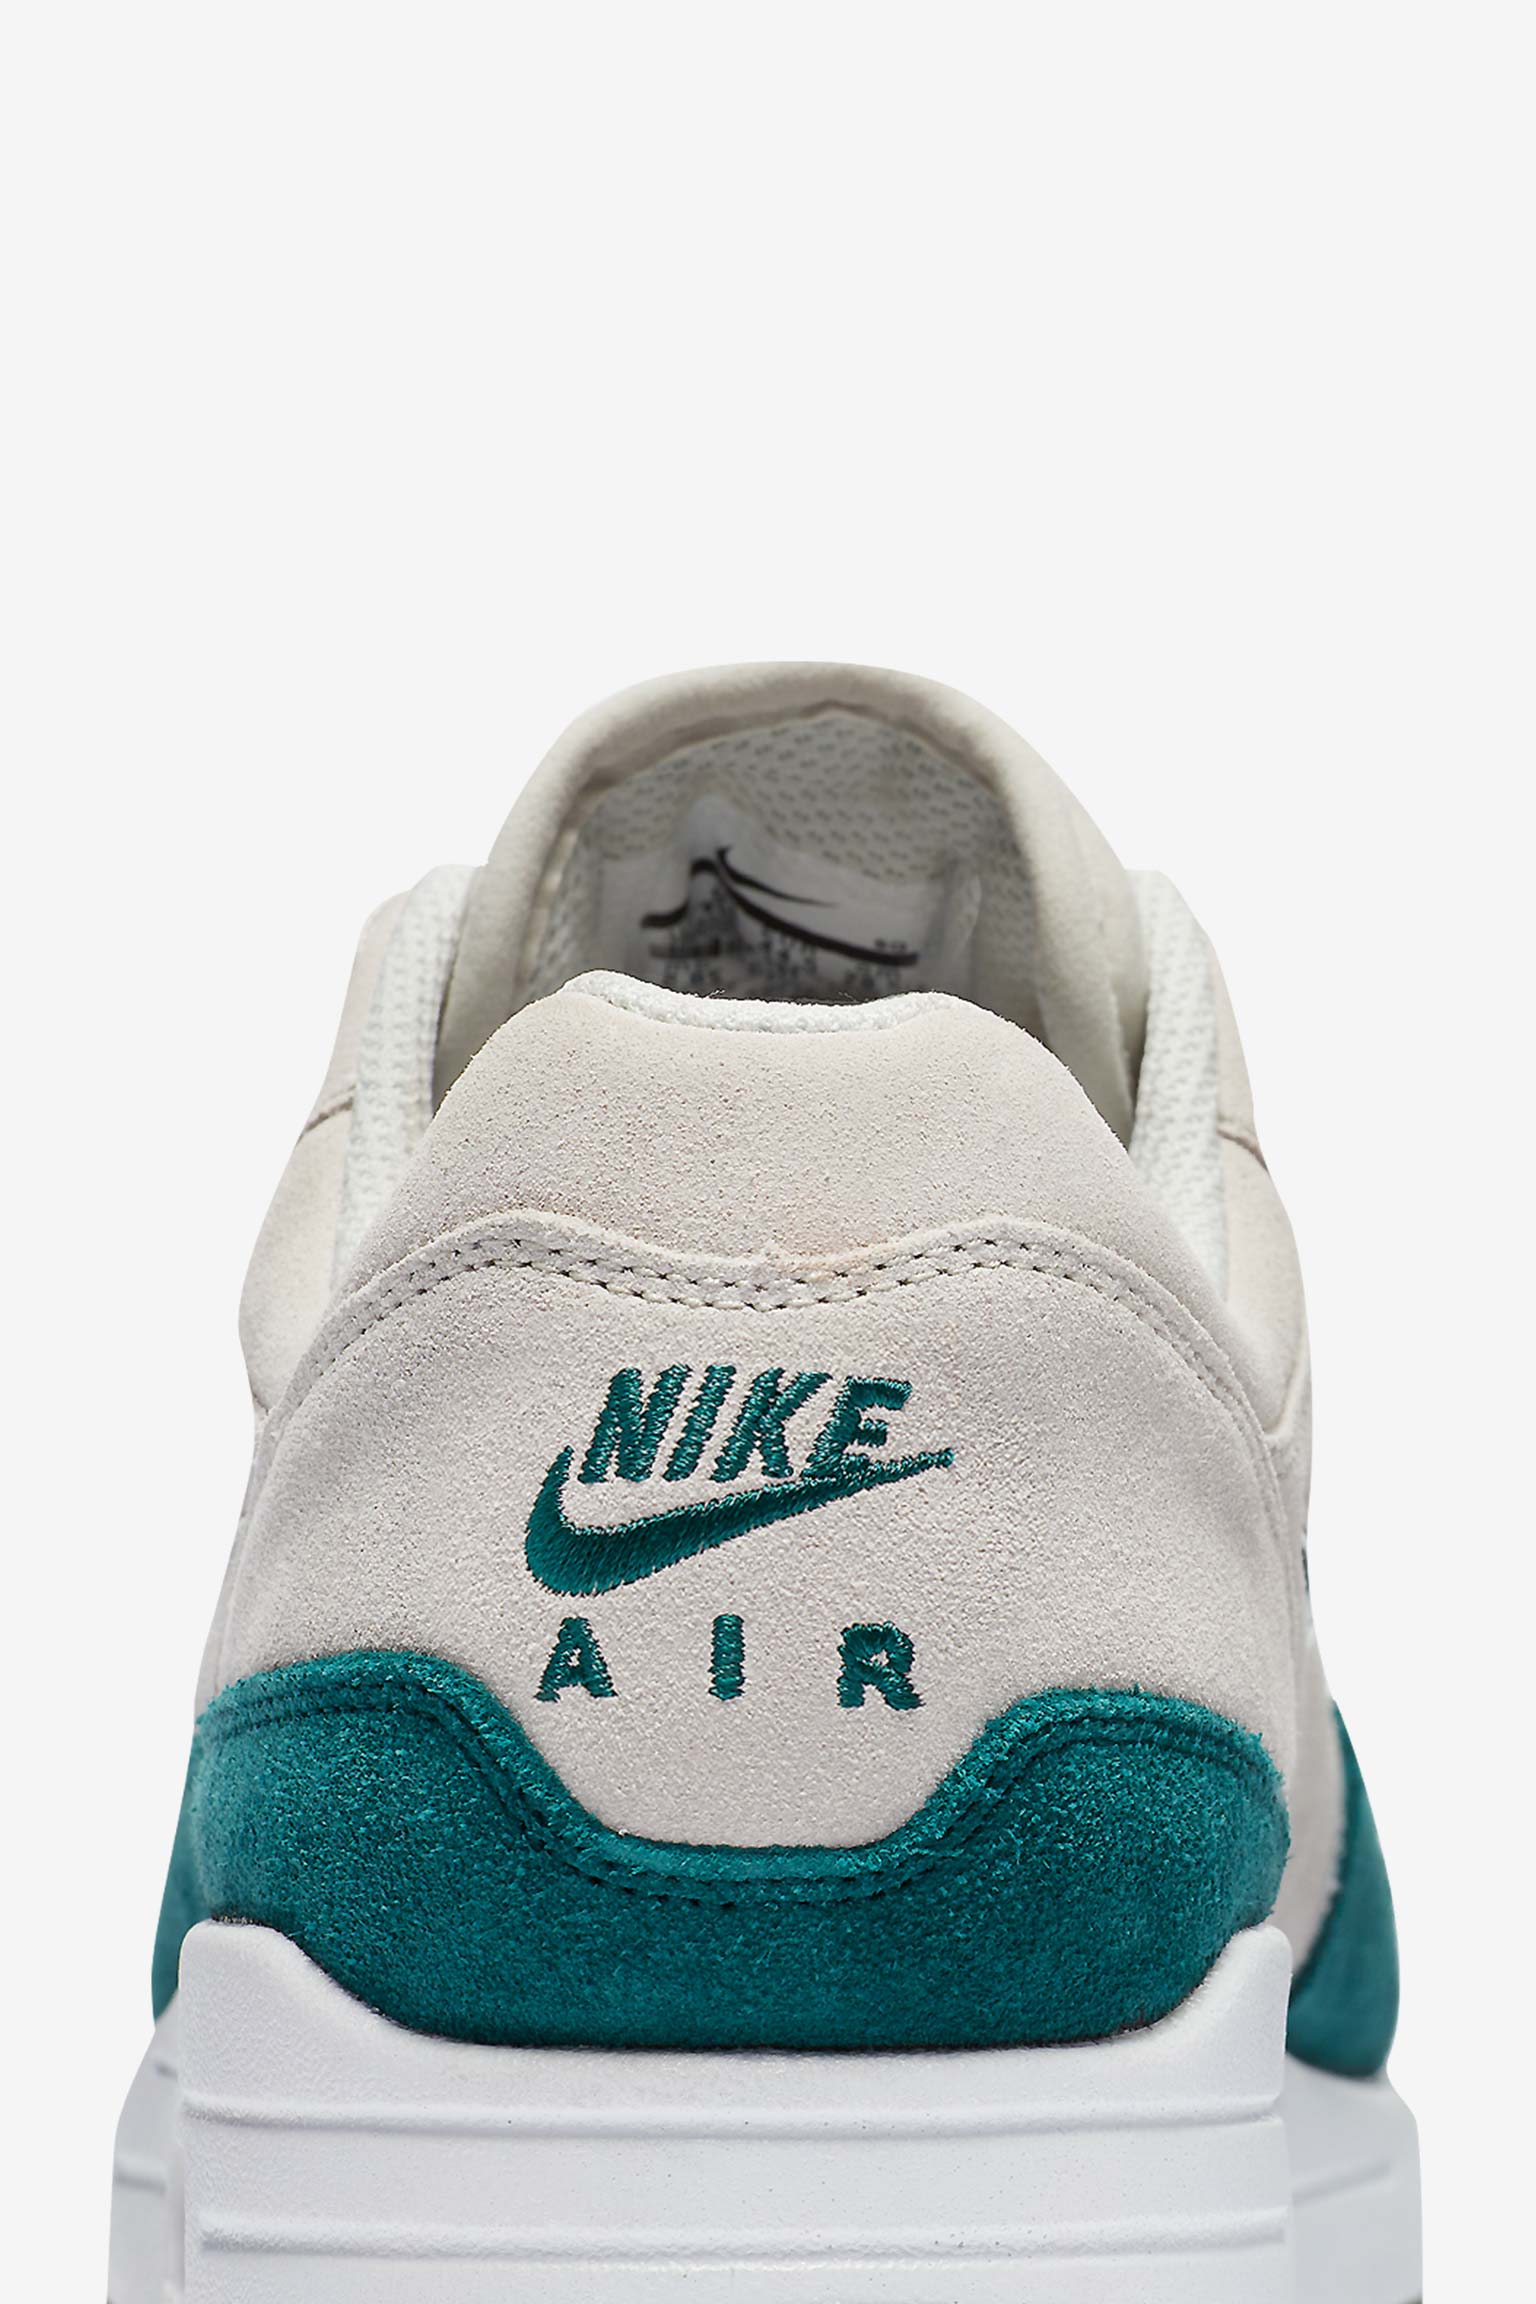 Nike Air Max 1 Premium 